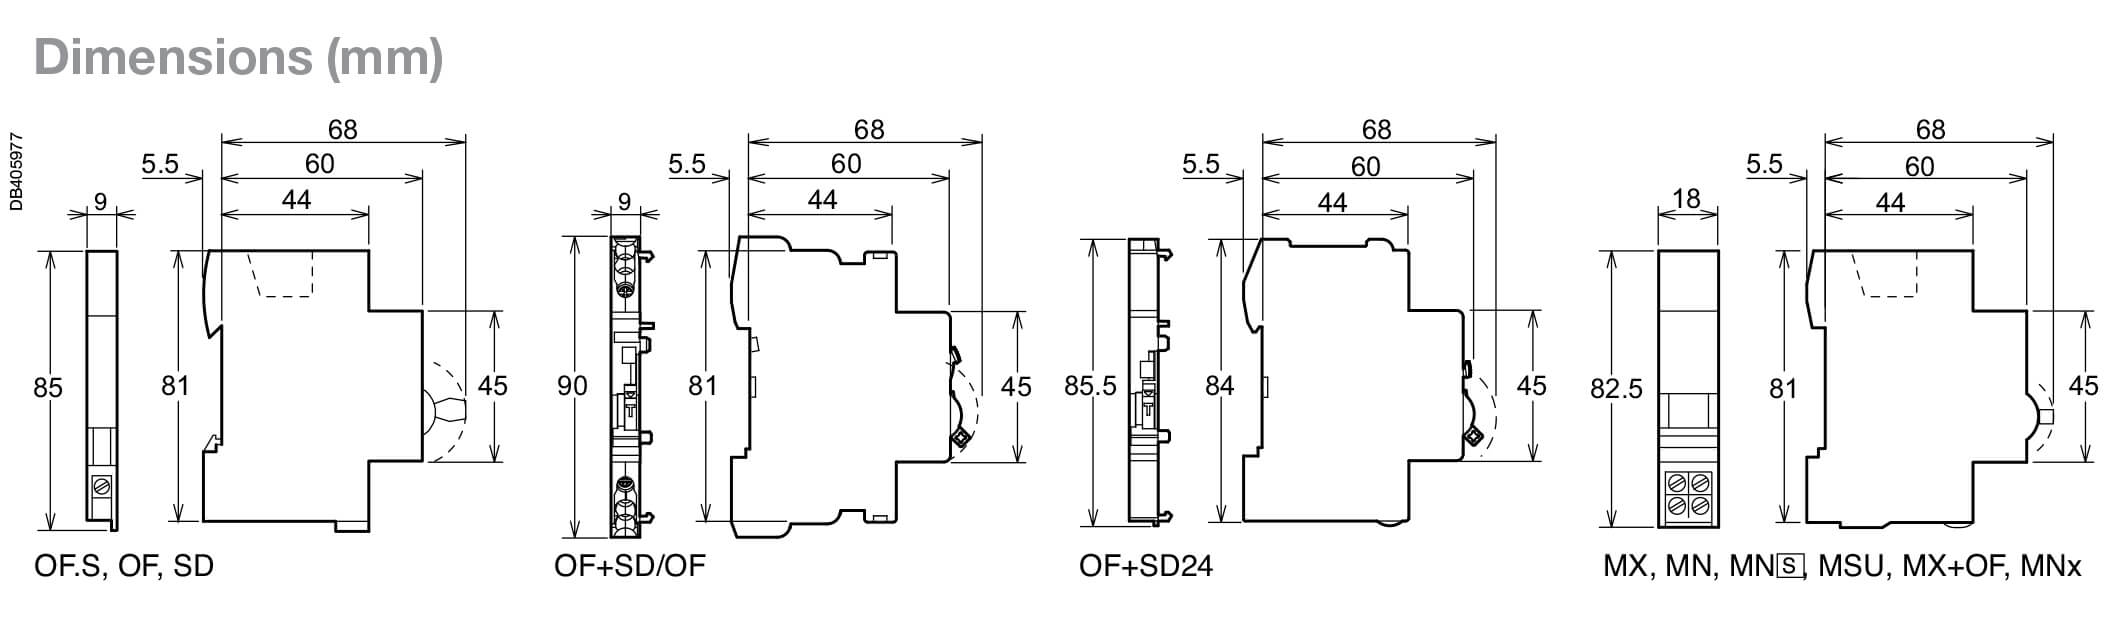 Cấu tạo và Kích thước Schneider-A9N26924, tiếp điểm phụ iOF dùng cho cầu dao tự động C60H-DC và C120